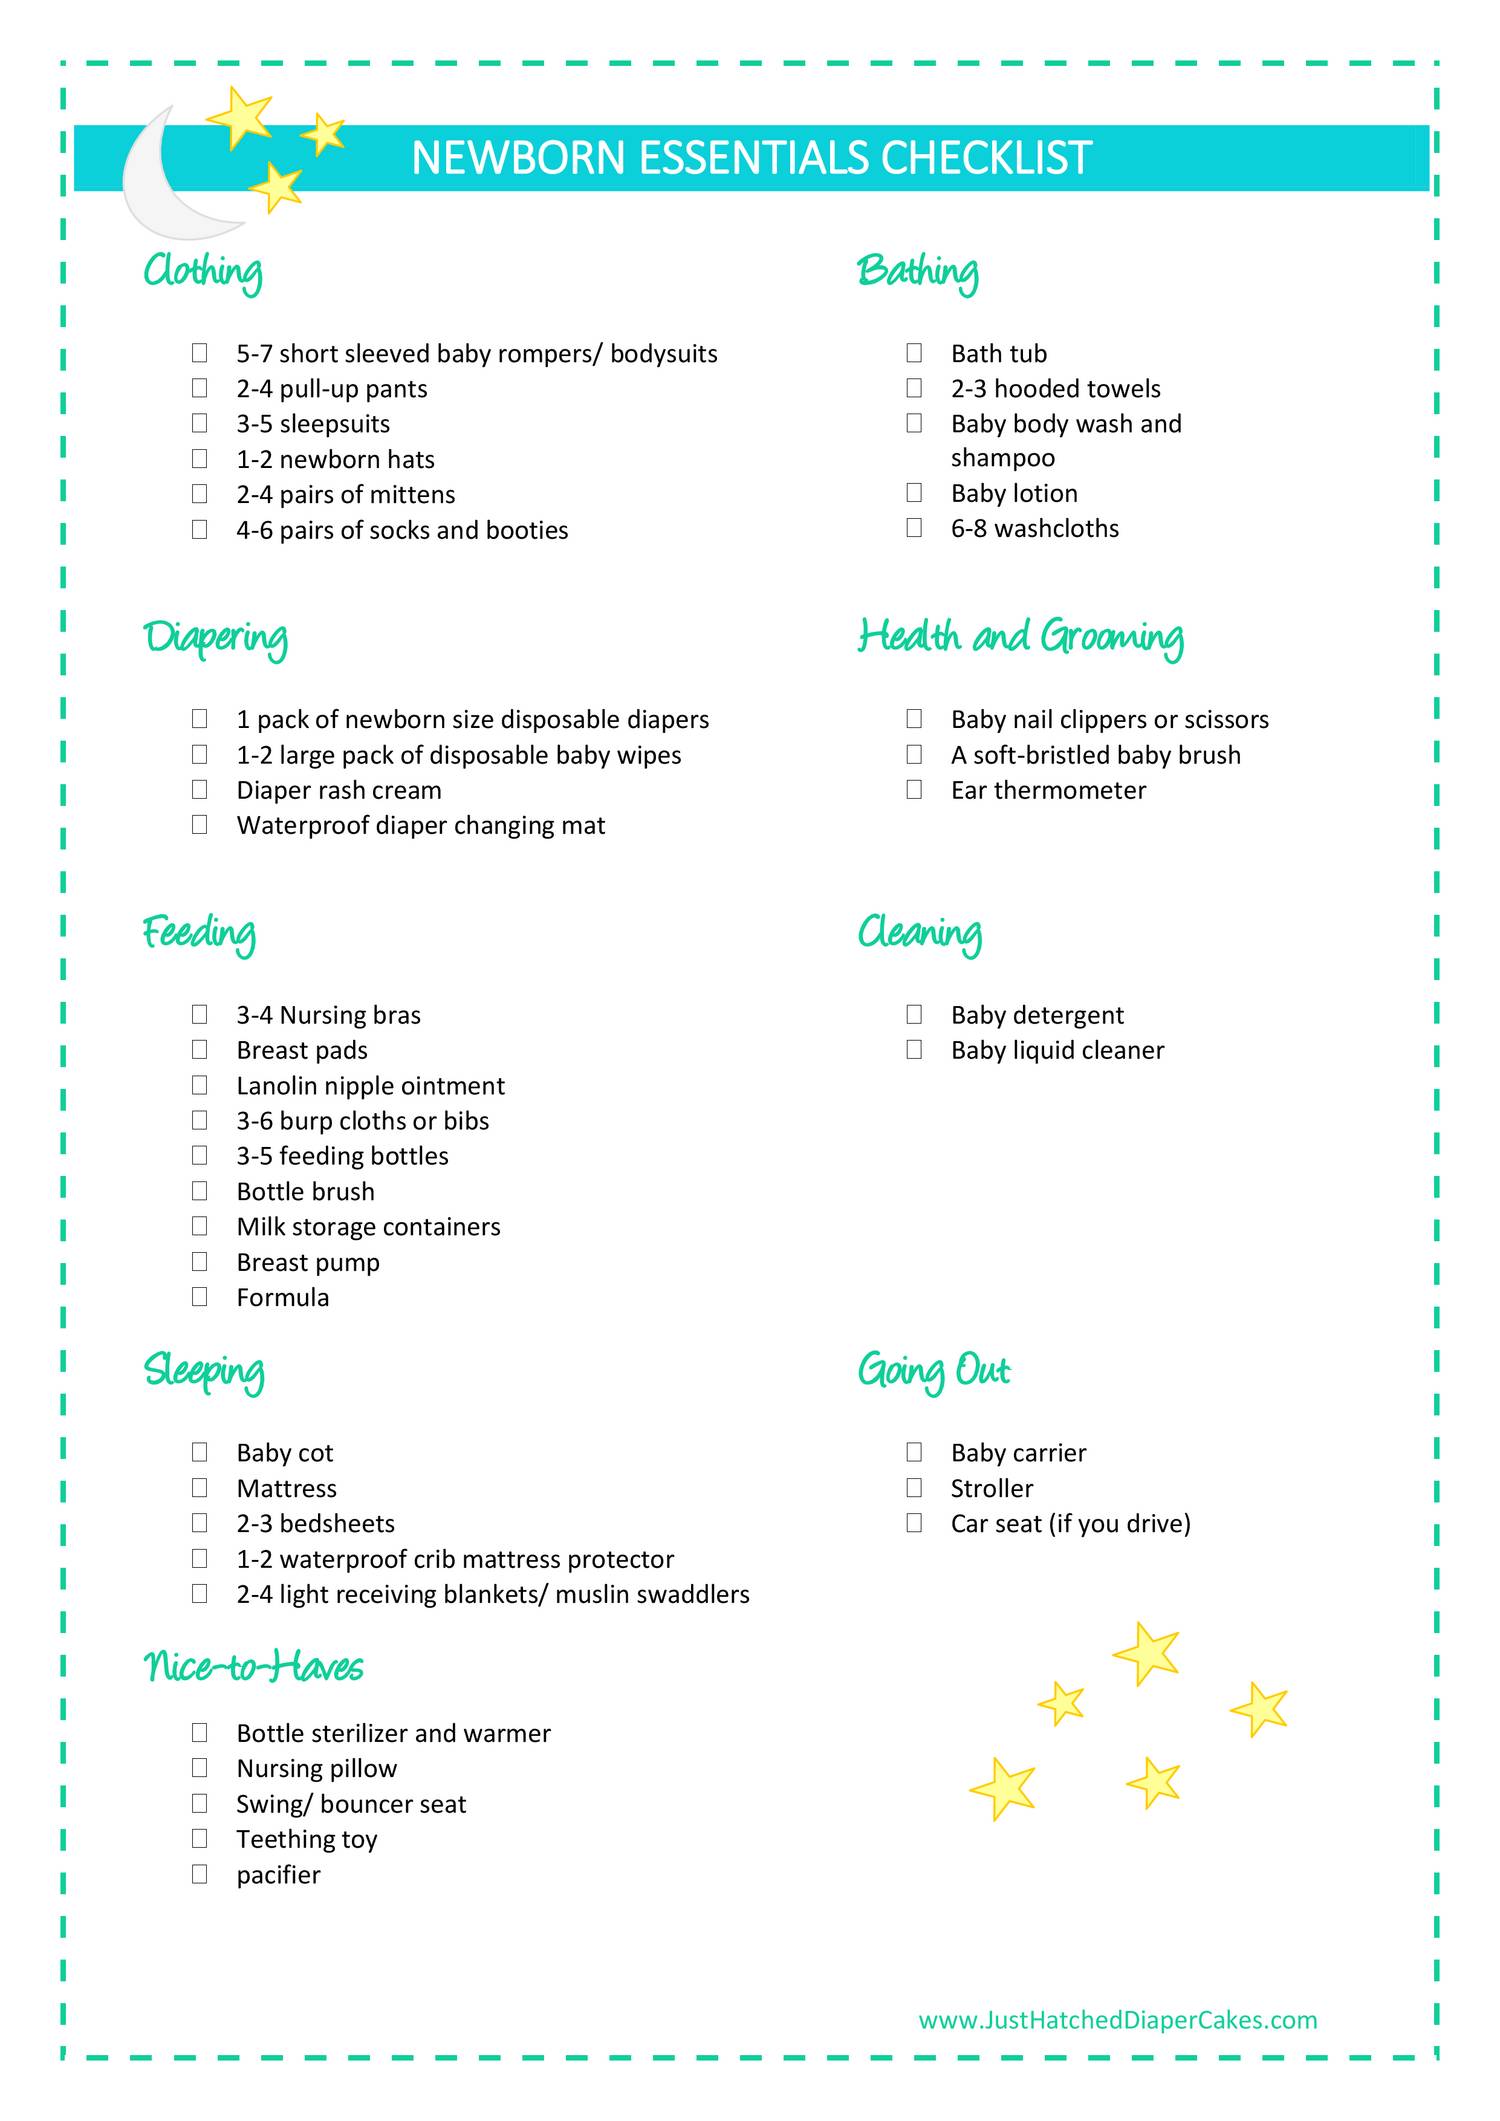 newborn-essentials-checklist-pdf-docdroid